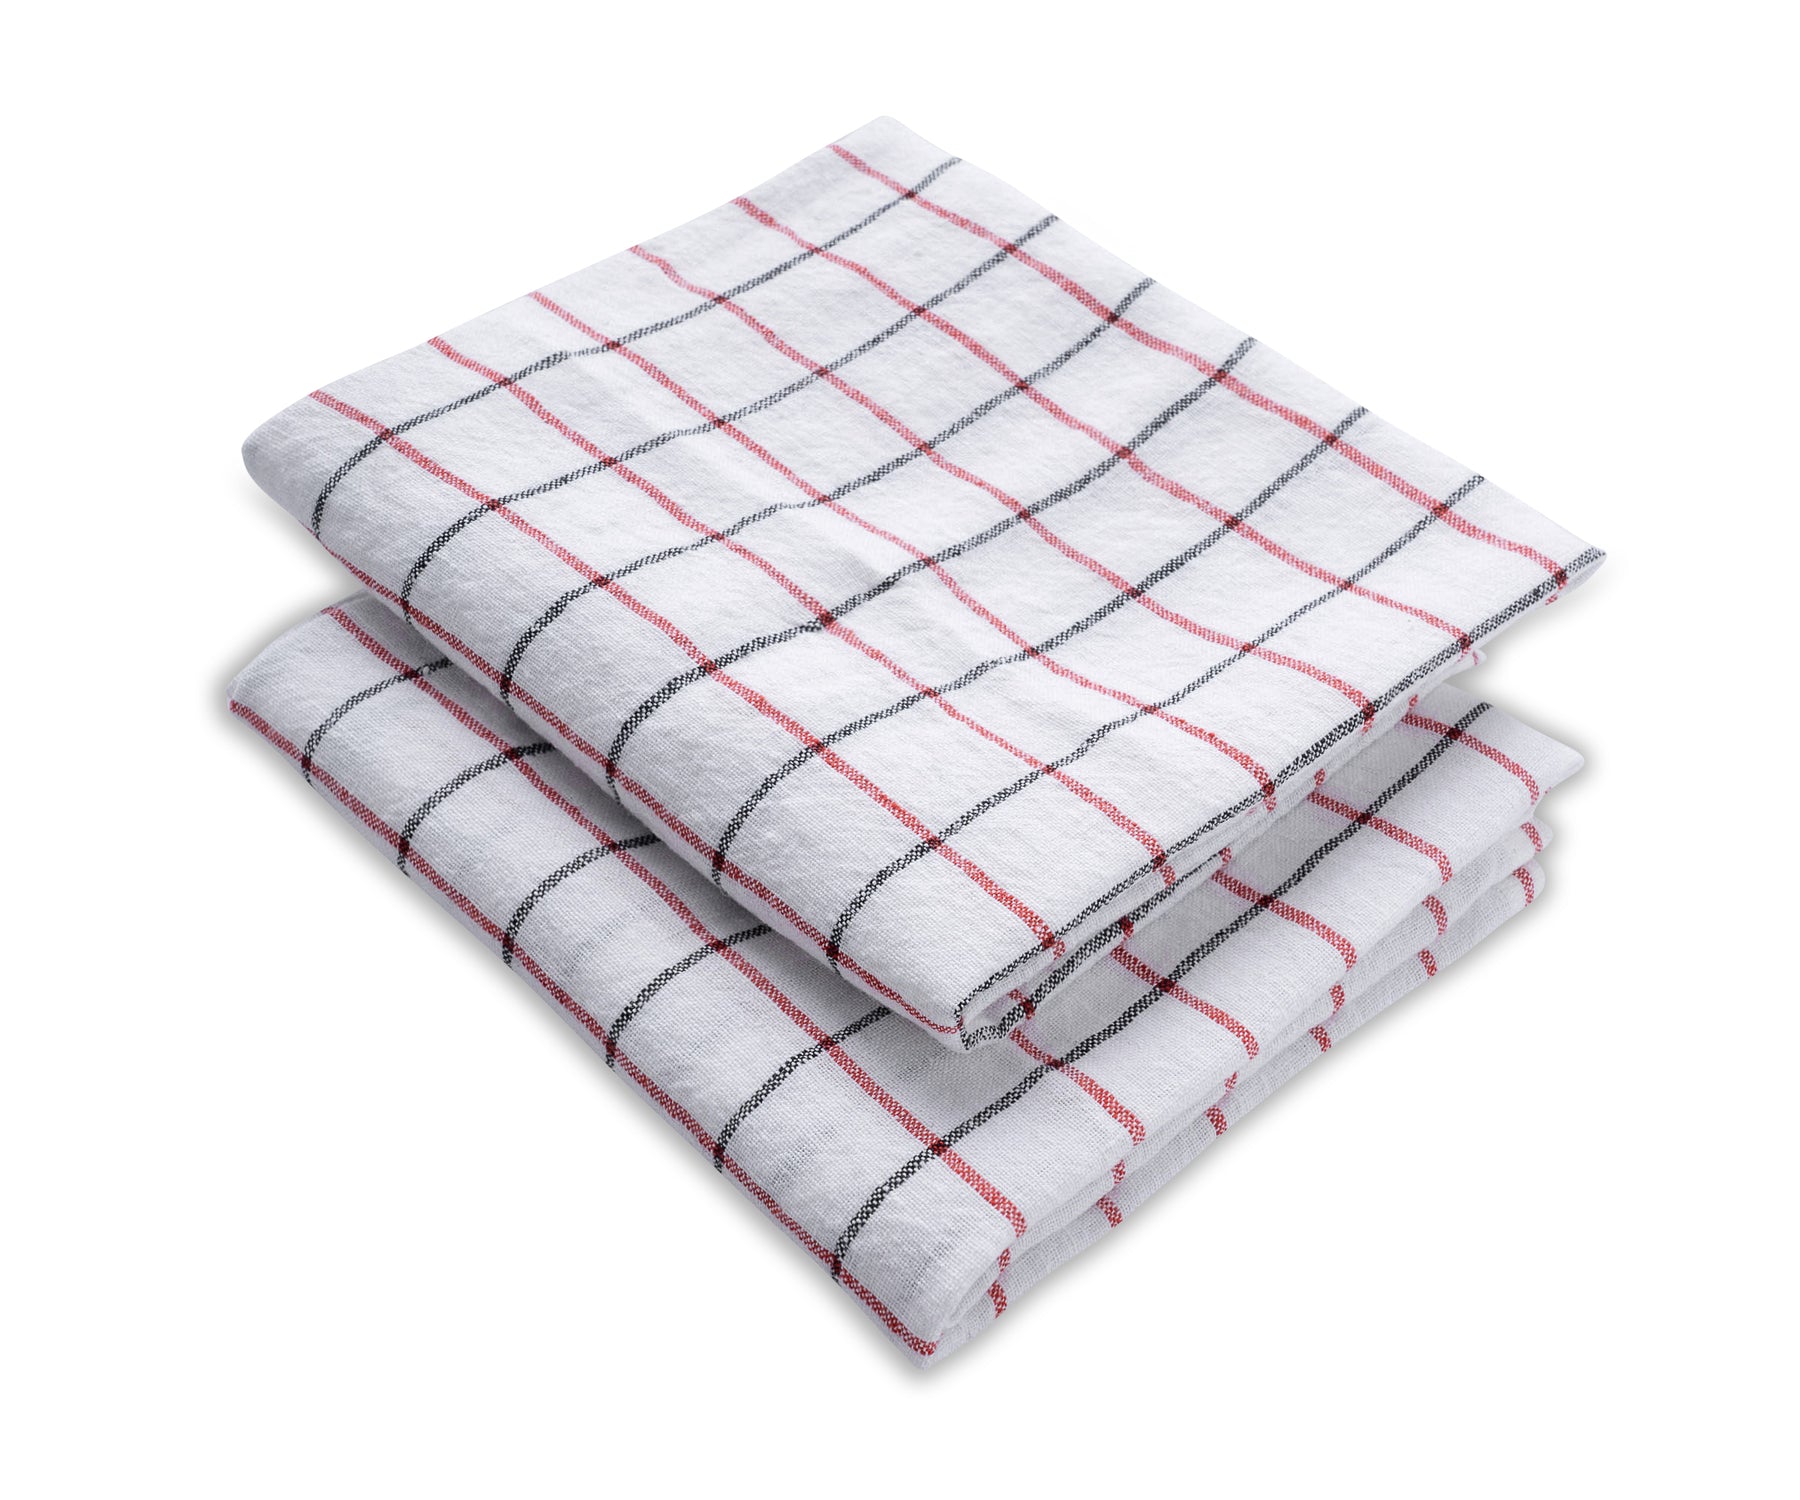 Cotton Tea Towels Block Print Kitchen Towels Dish Cloths Set of 2